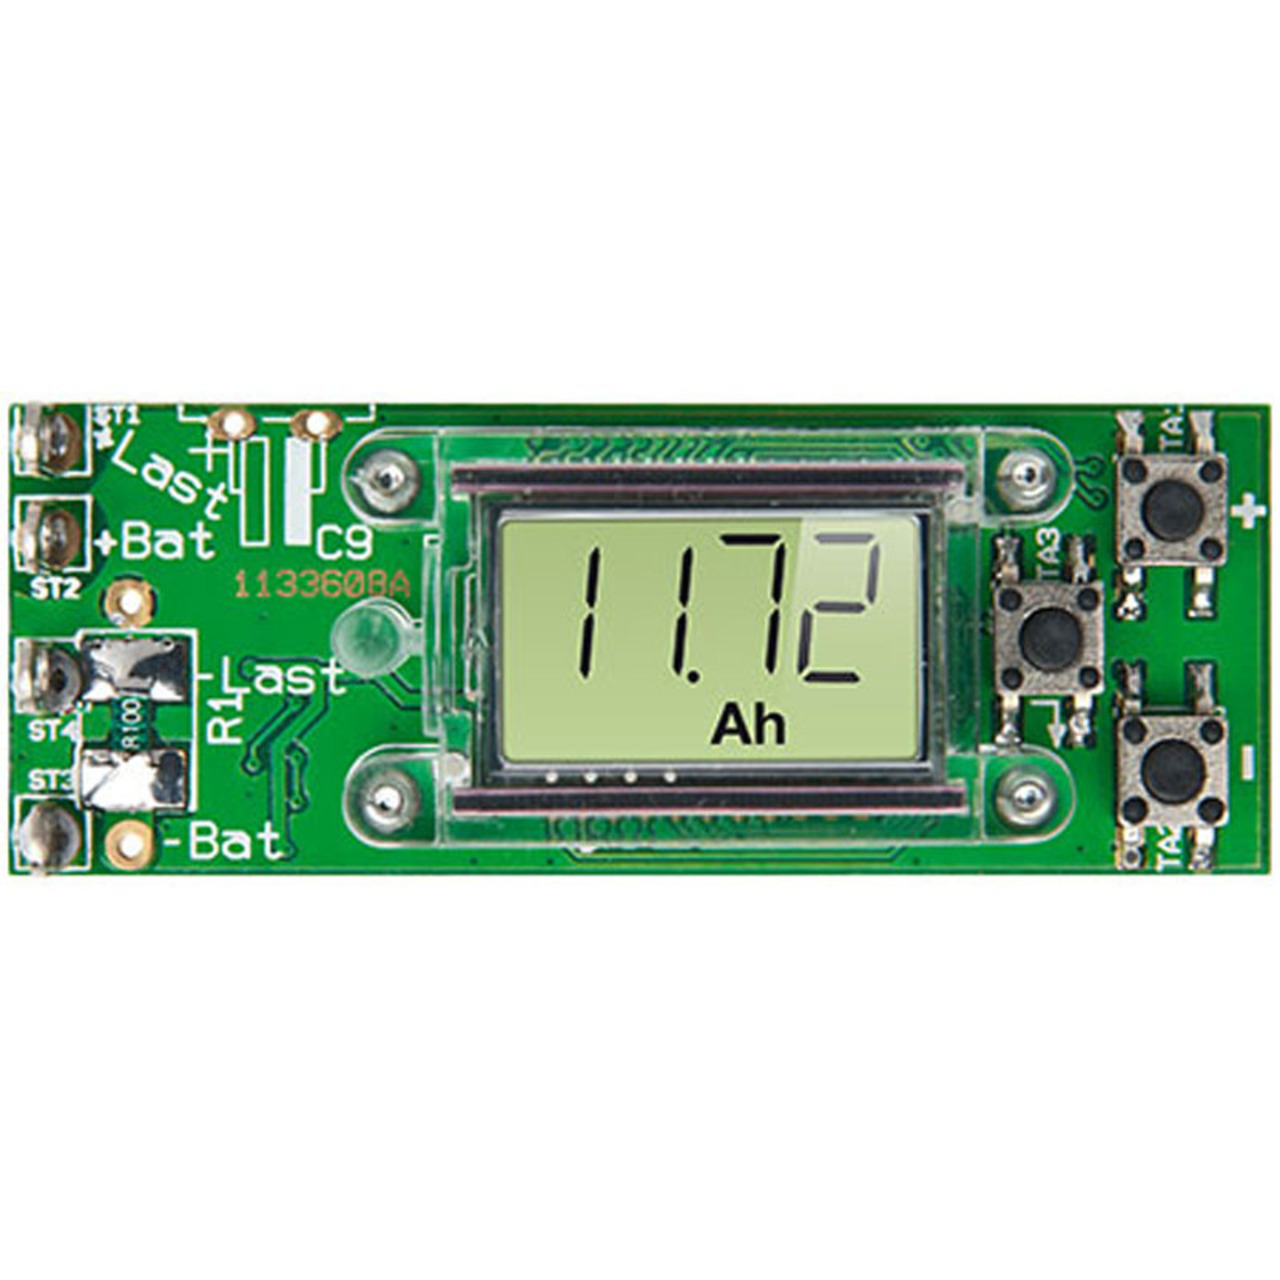 ELV Bausatz Gleichstromzhlermodul GZM 500 (Akku-Monitor mit DS-Chip) unter Baustze